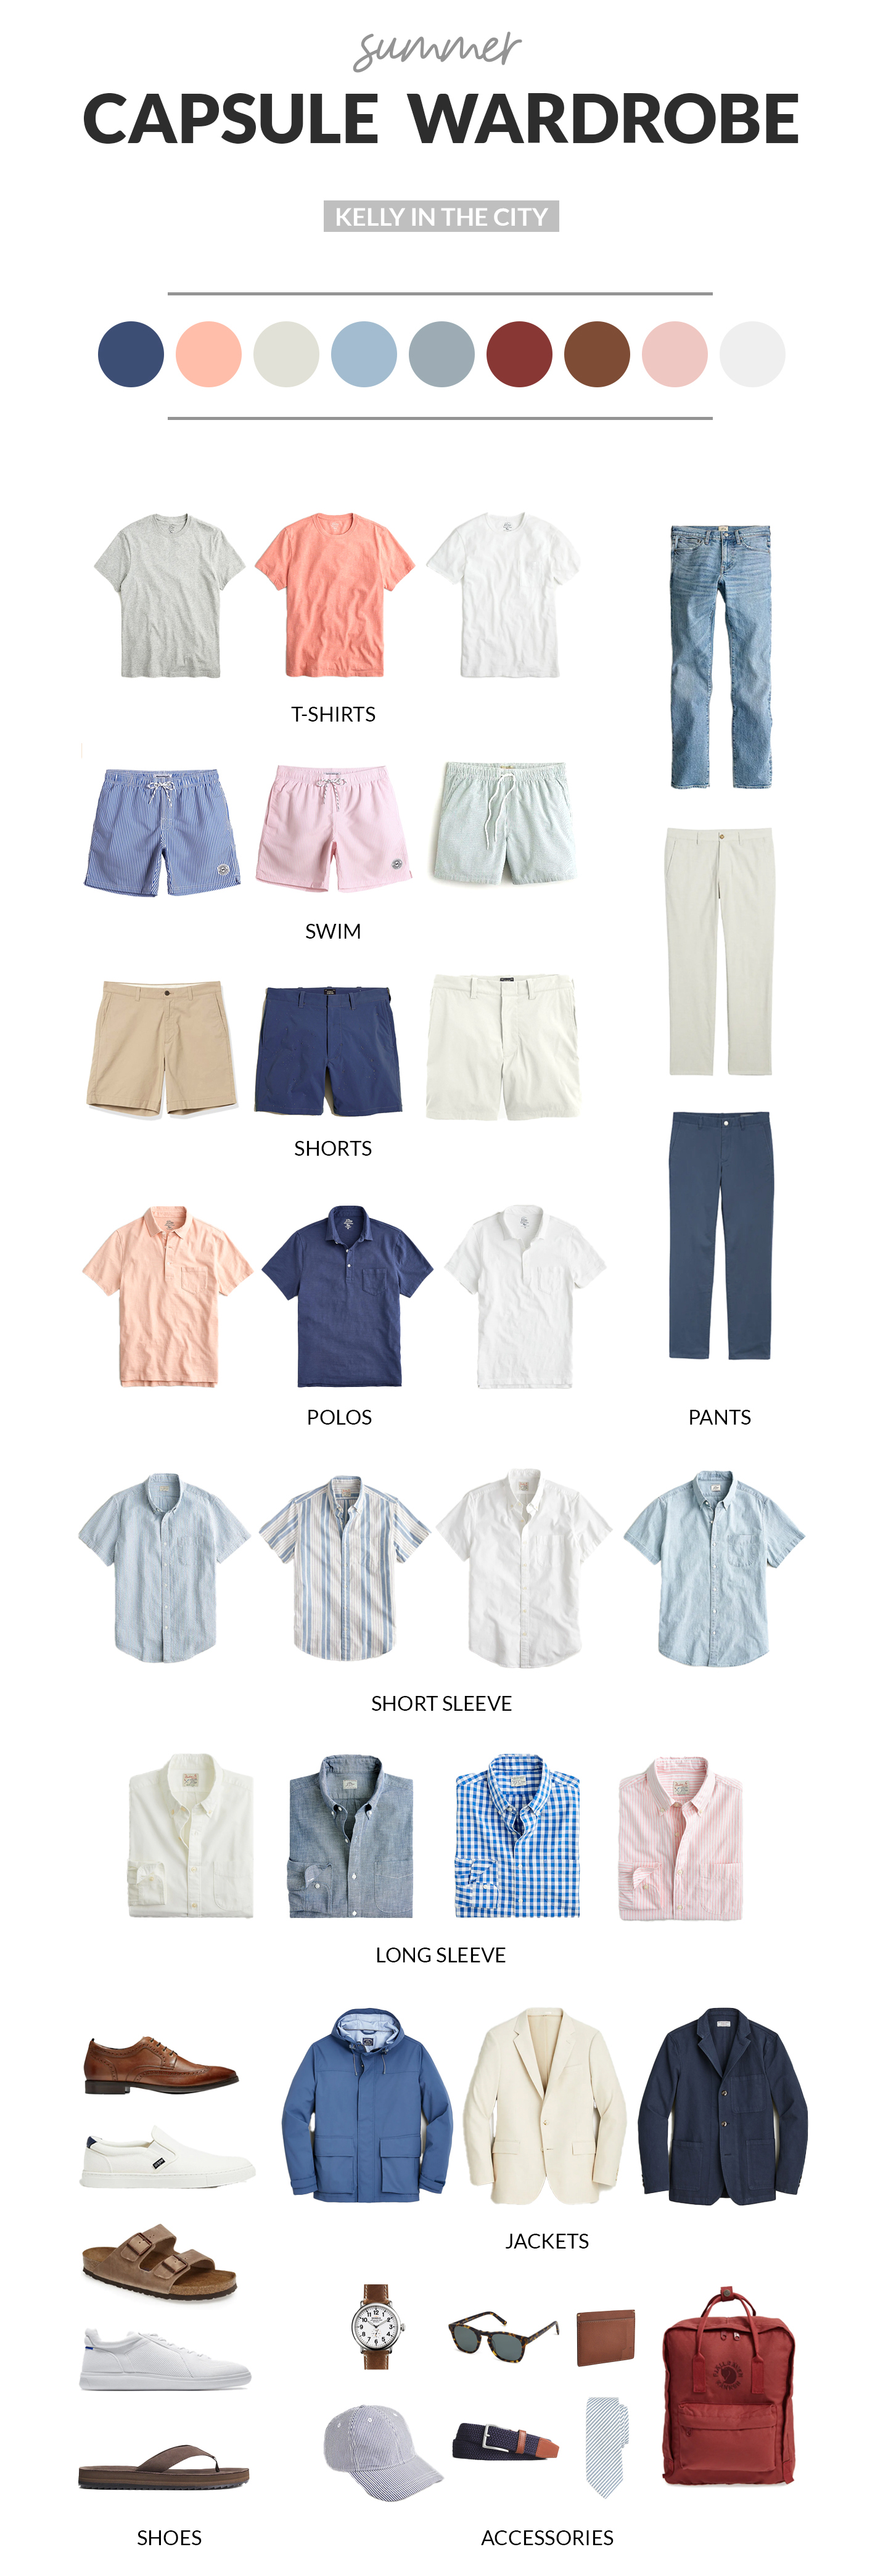 Mitch’s Summer Capsule Wardrobe for Men Design X Core